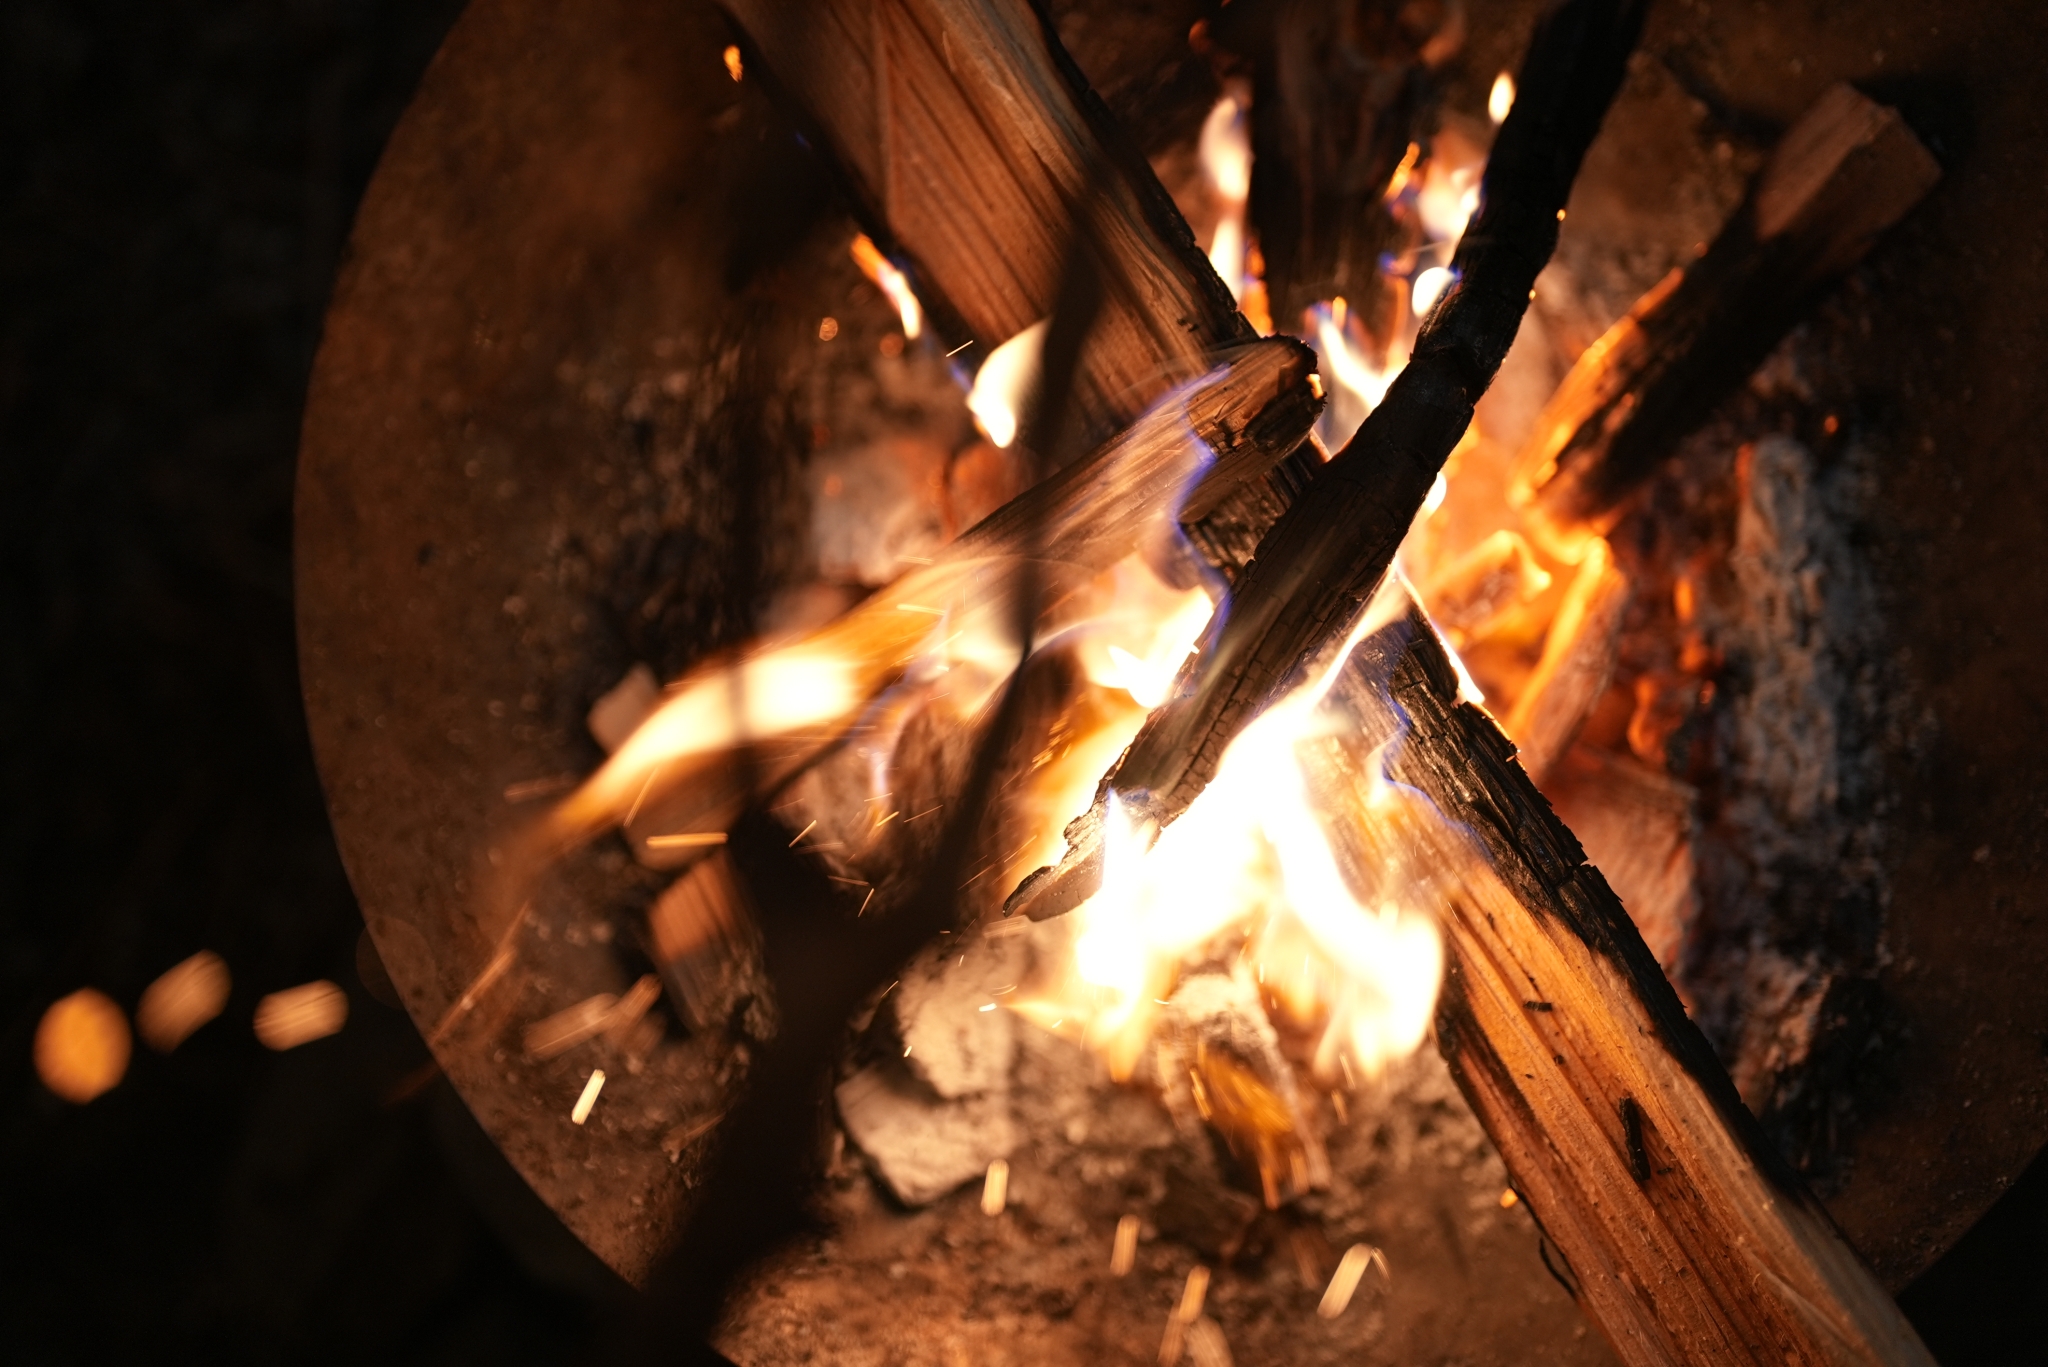 A campfire at night